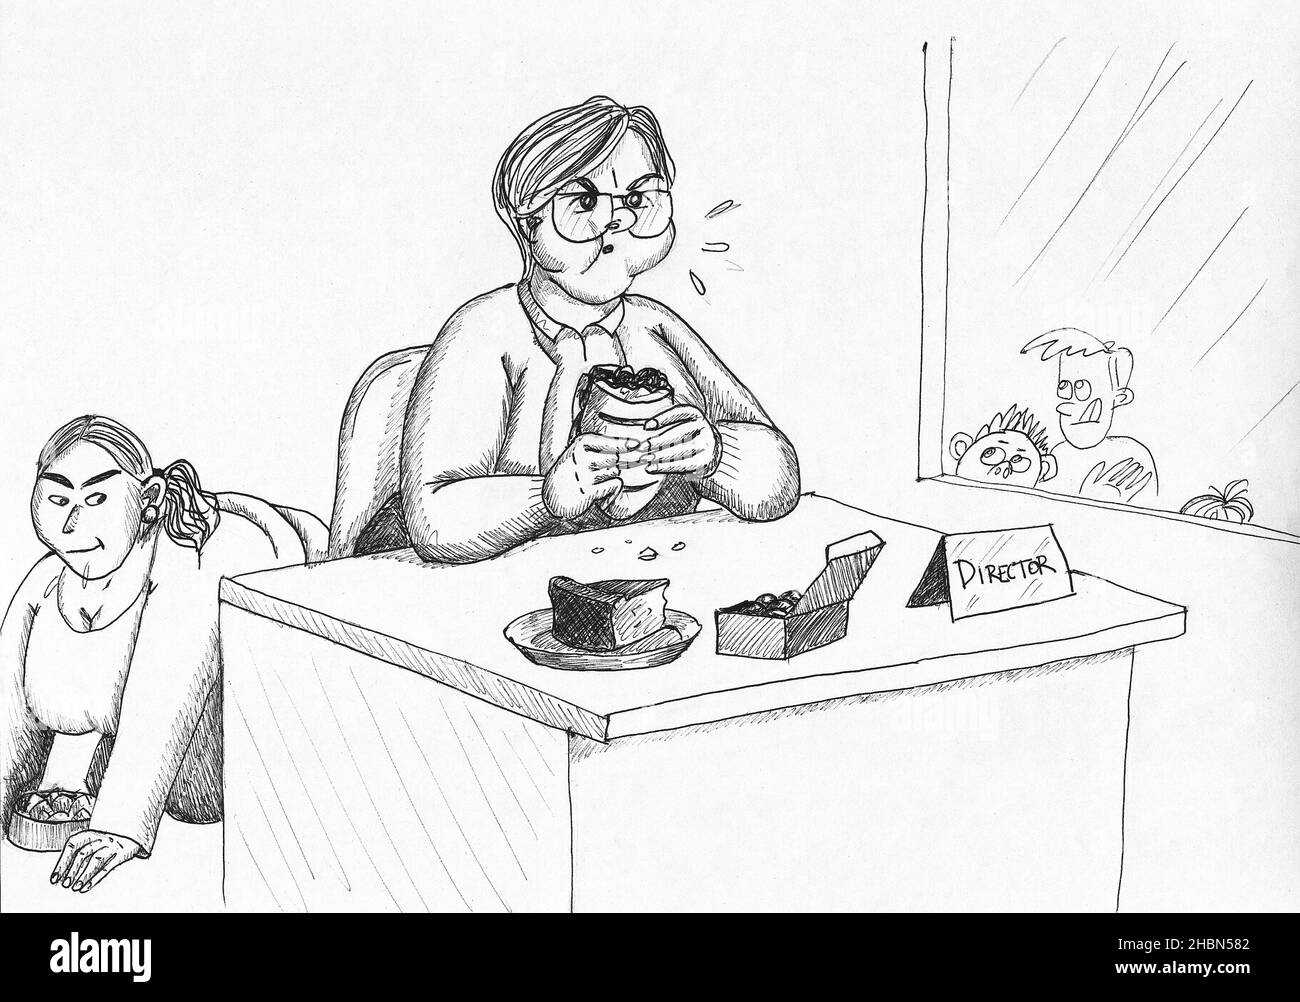 Directeur mangeant un sandwich dans son bureau.Illustration. Banque D'Images